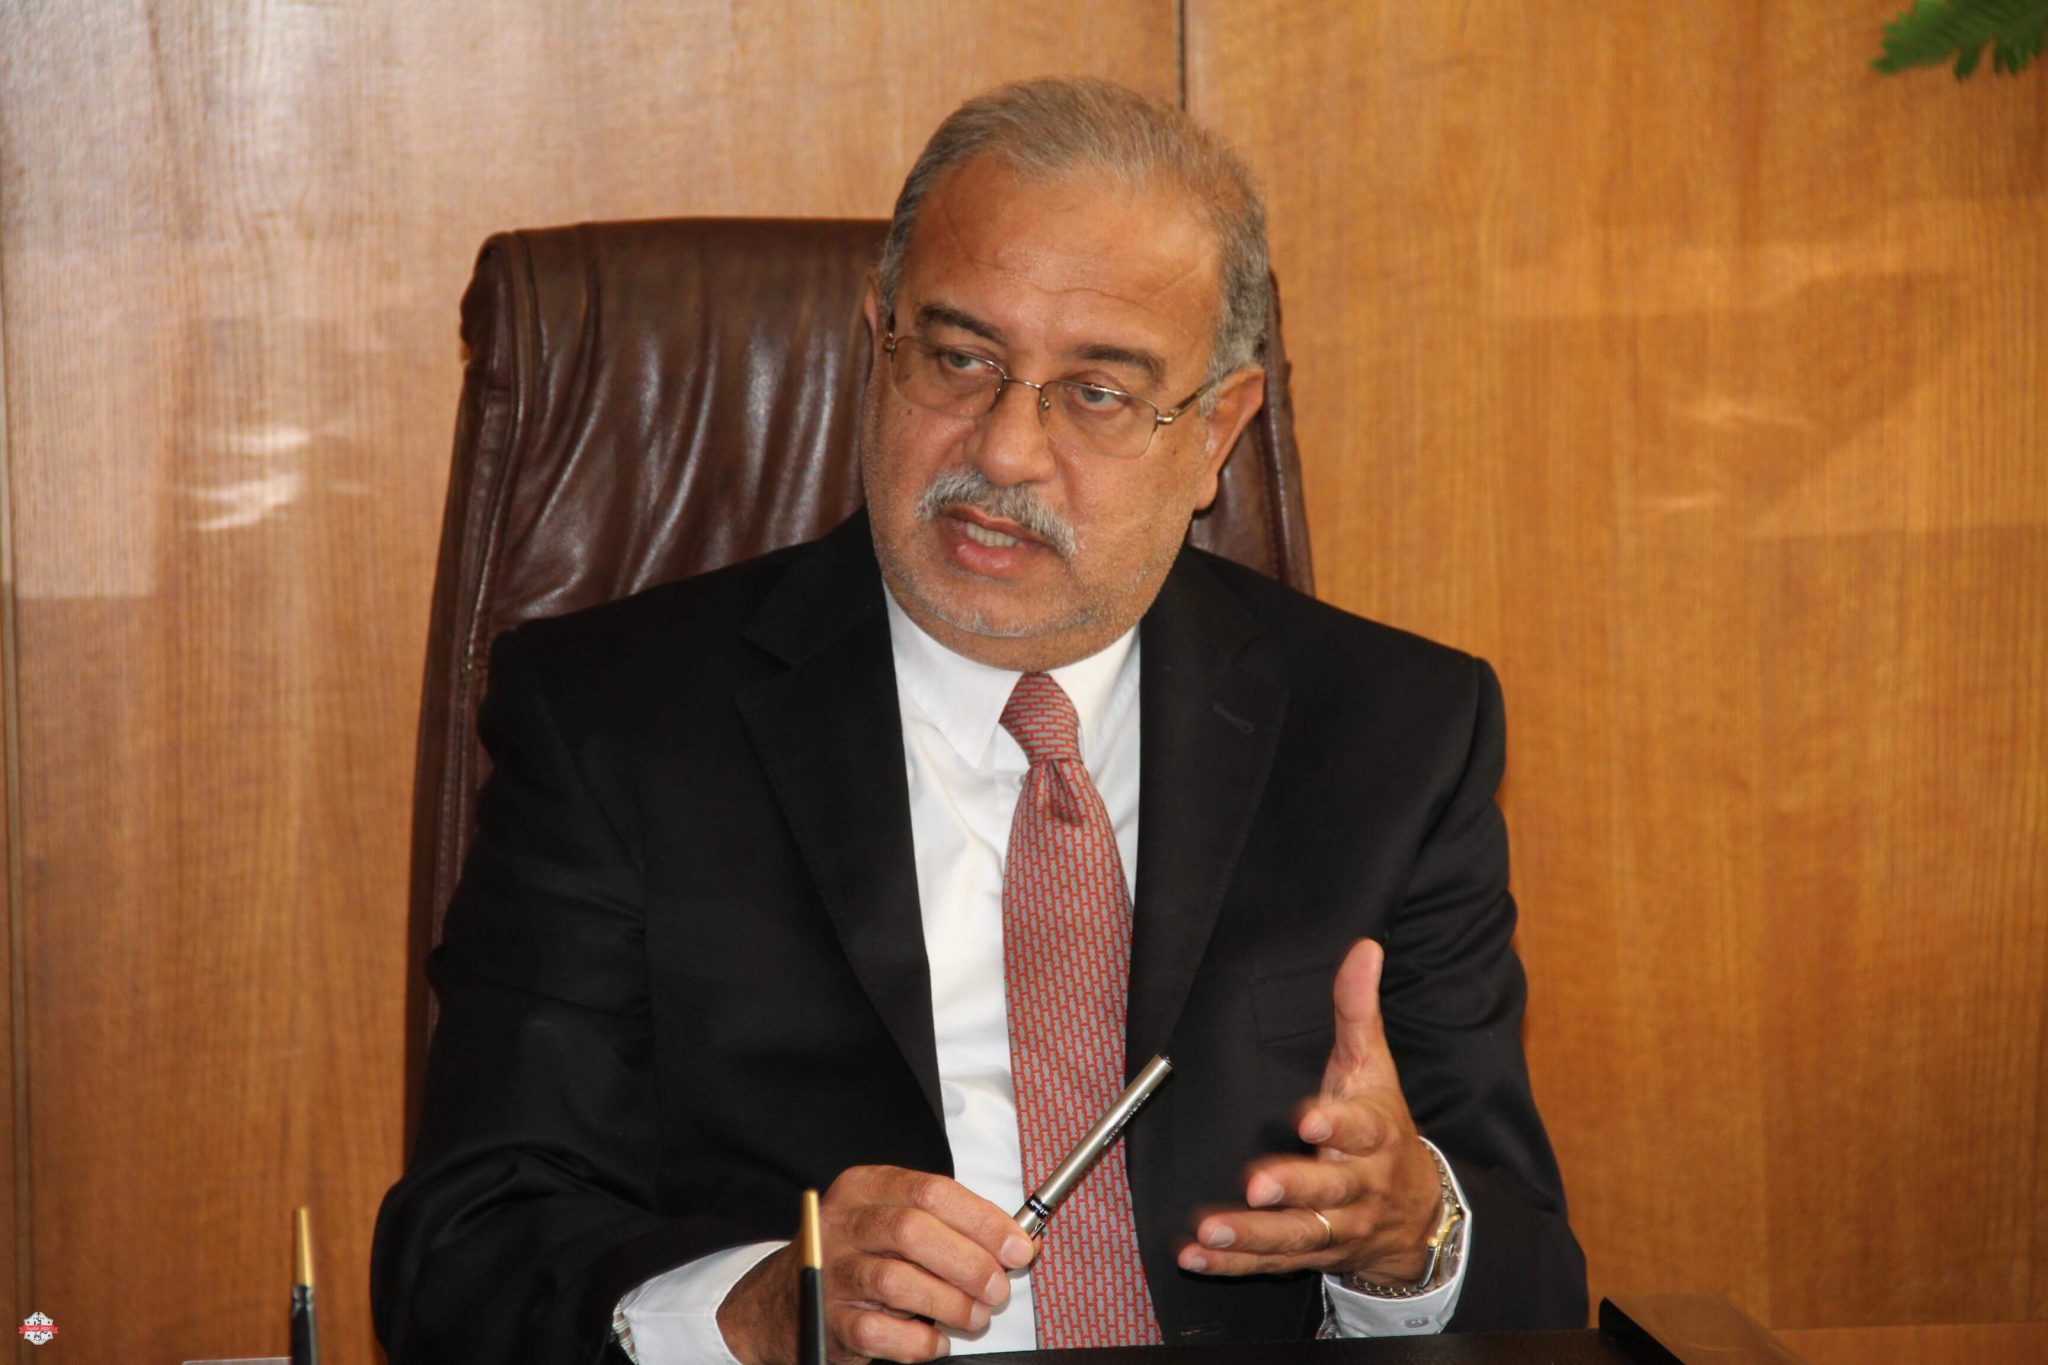   مجلس الوزراء يبحث إنشاء مدينة متكاملة غرب مصر